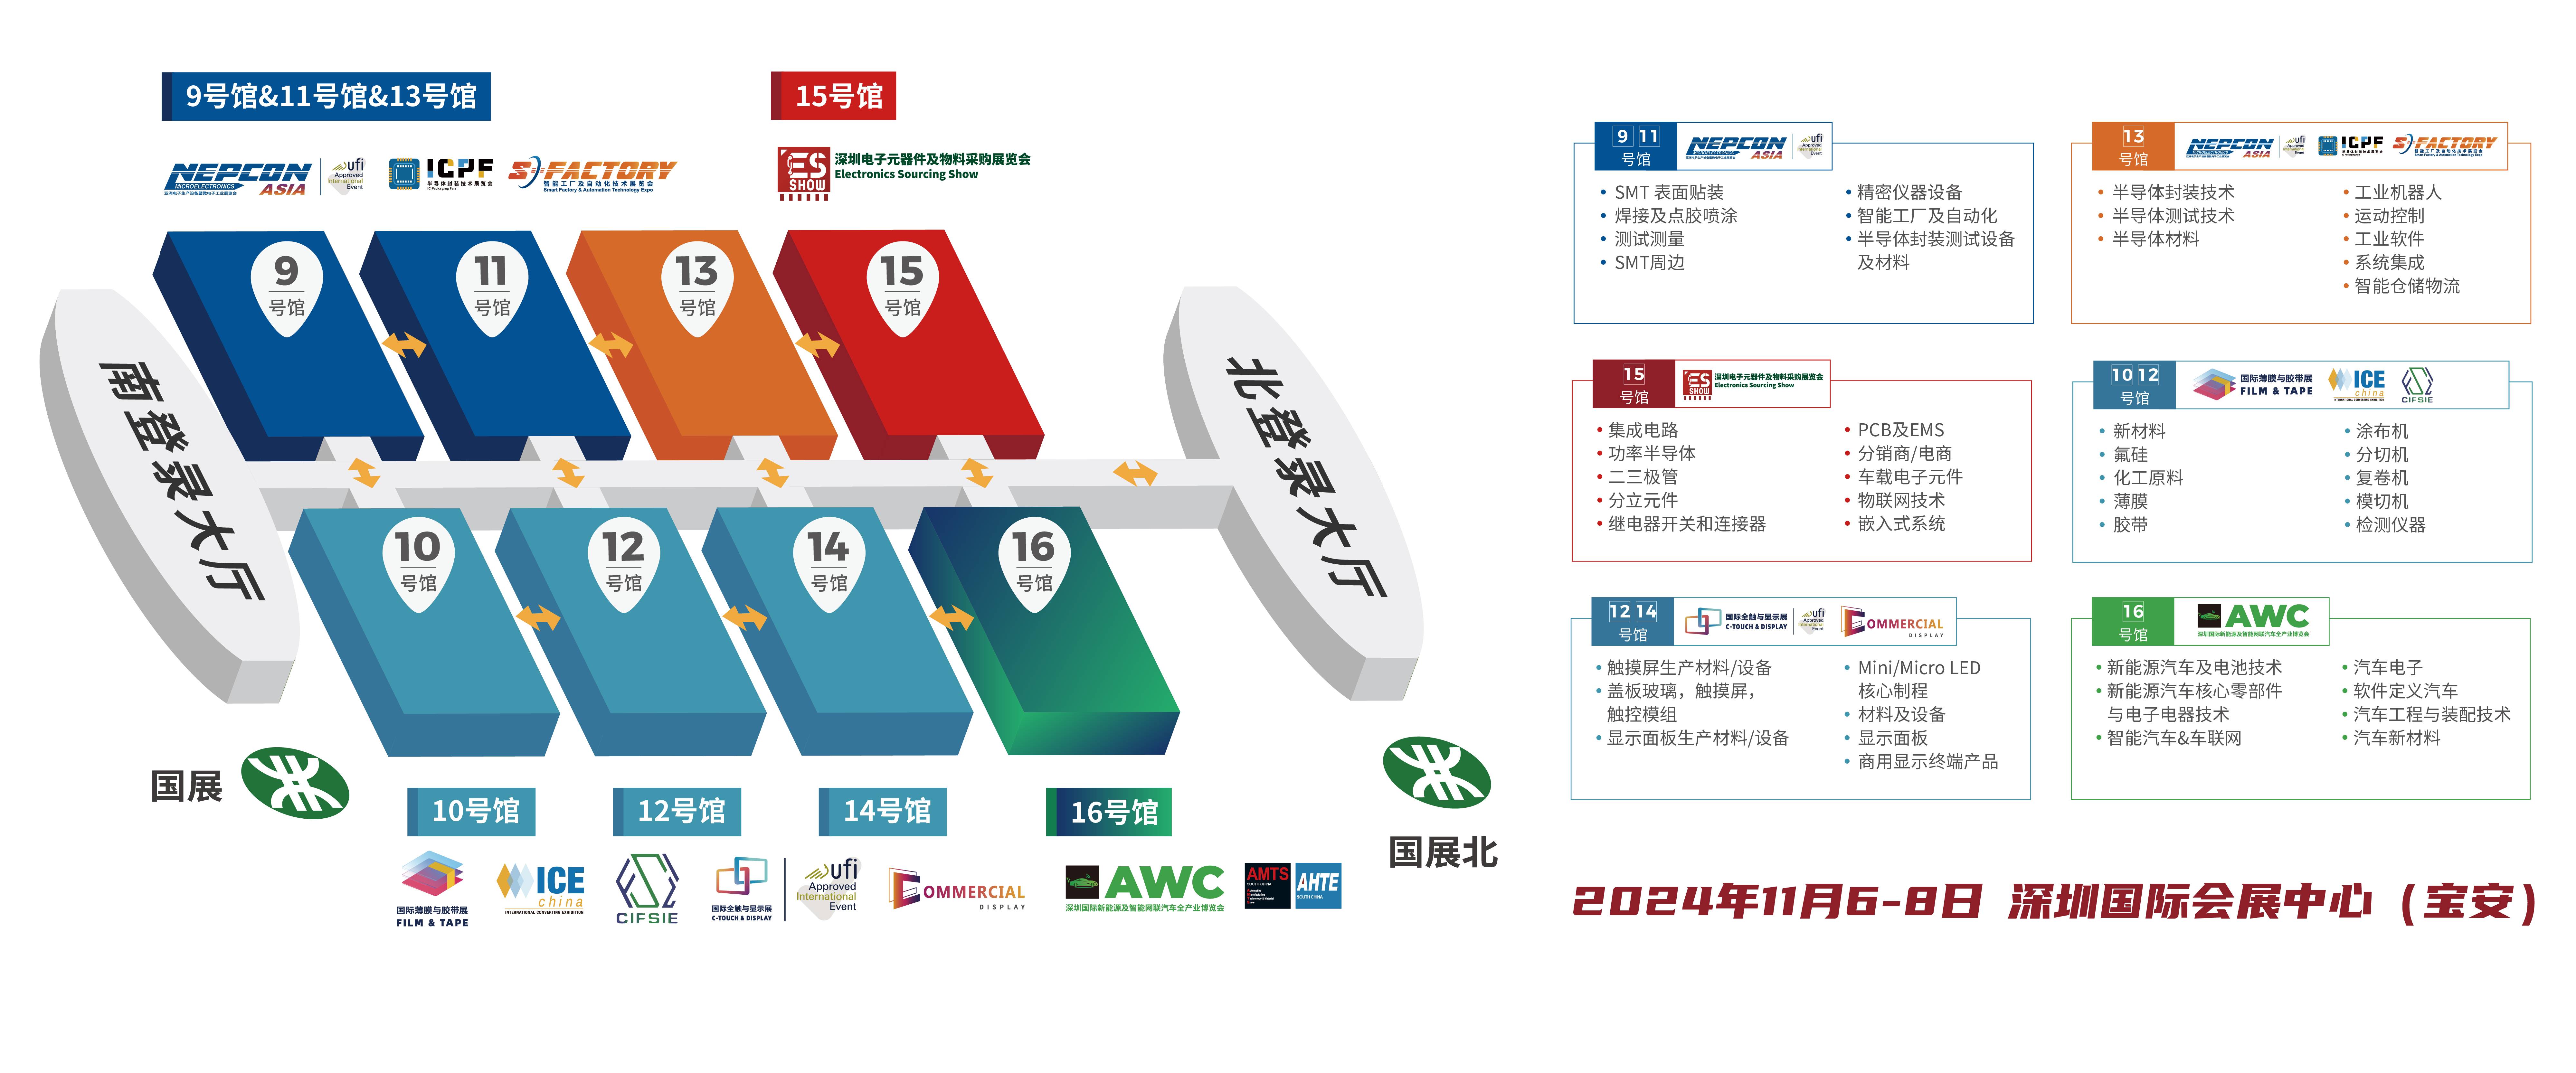 深圳电子展 华南电子展 锂电材料 新能源车 碳酸锂